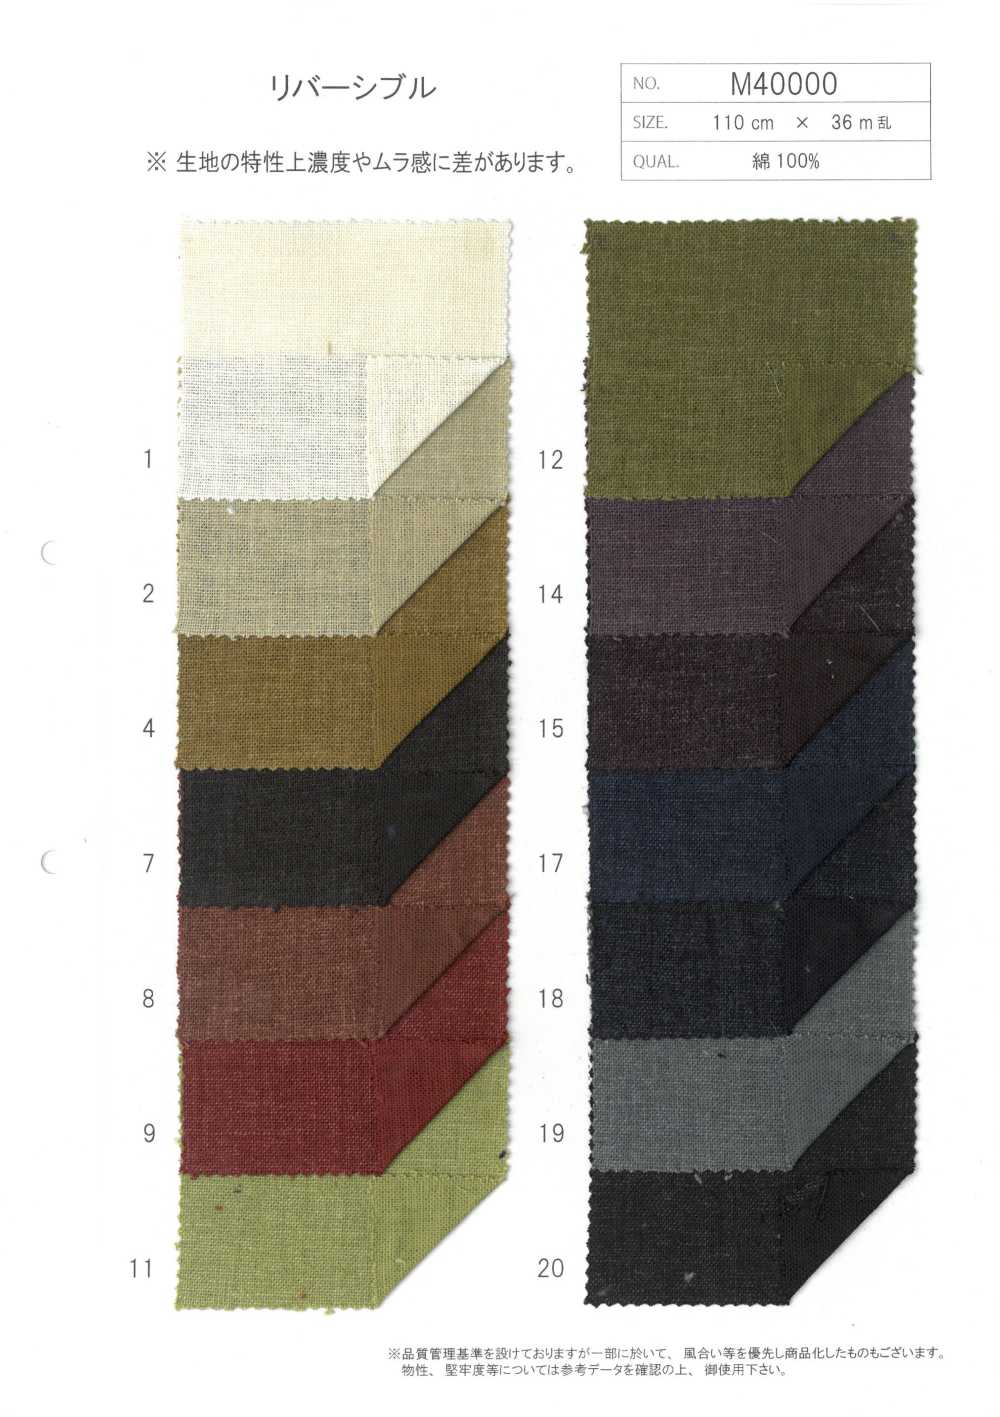 M40000 Algodón Molly Cruz Estampado[Fabrica Textil] Morigiku